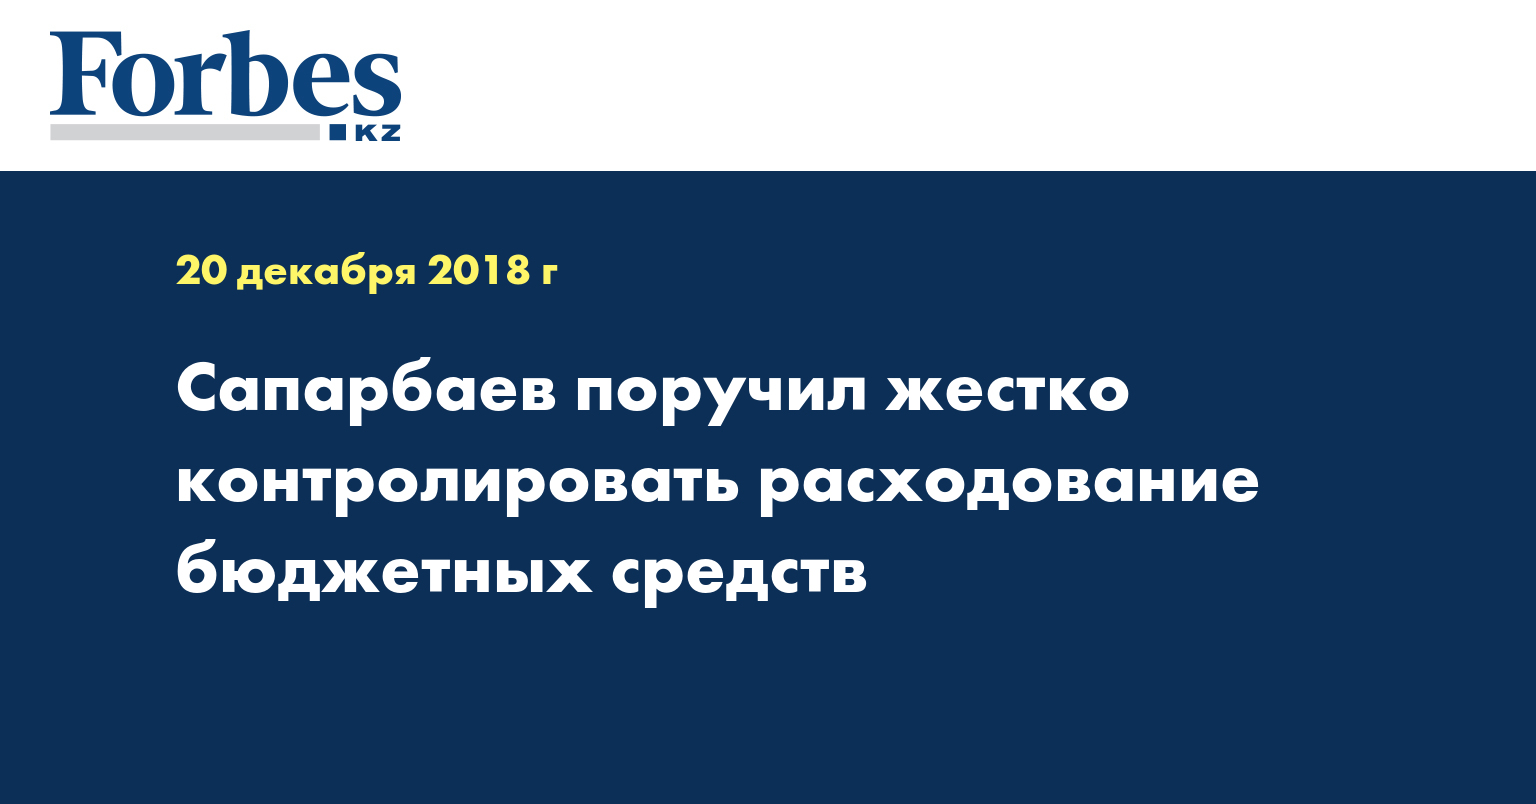 Сапарбаев поручил жестко контролировать расходование бюджетных средств